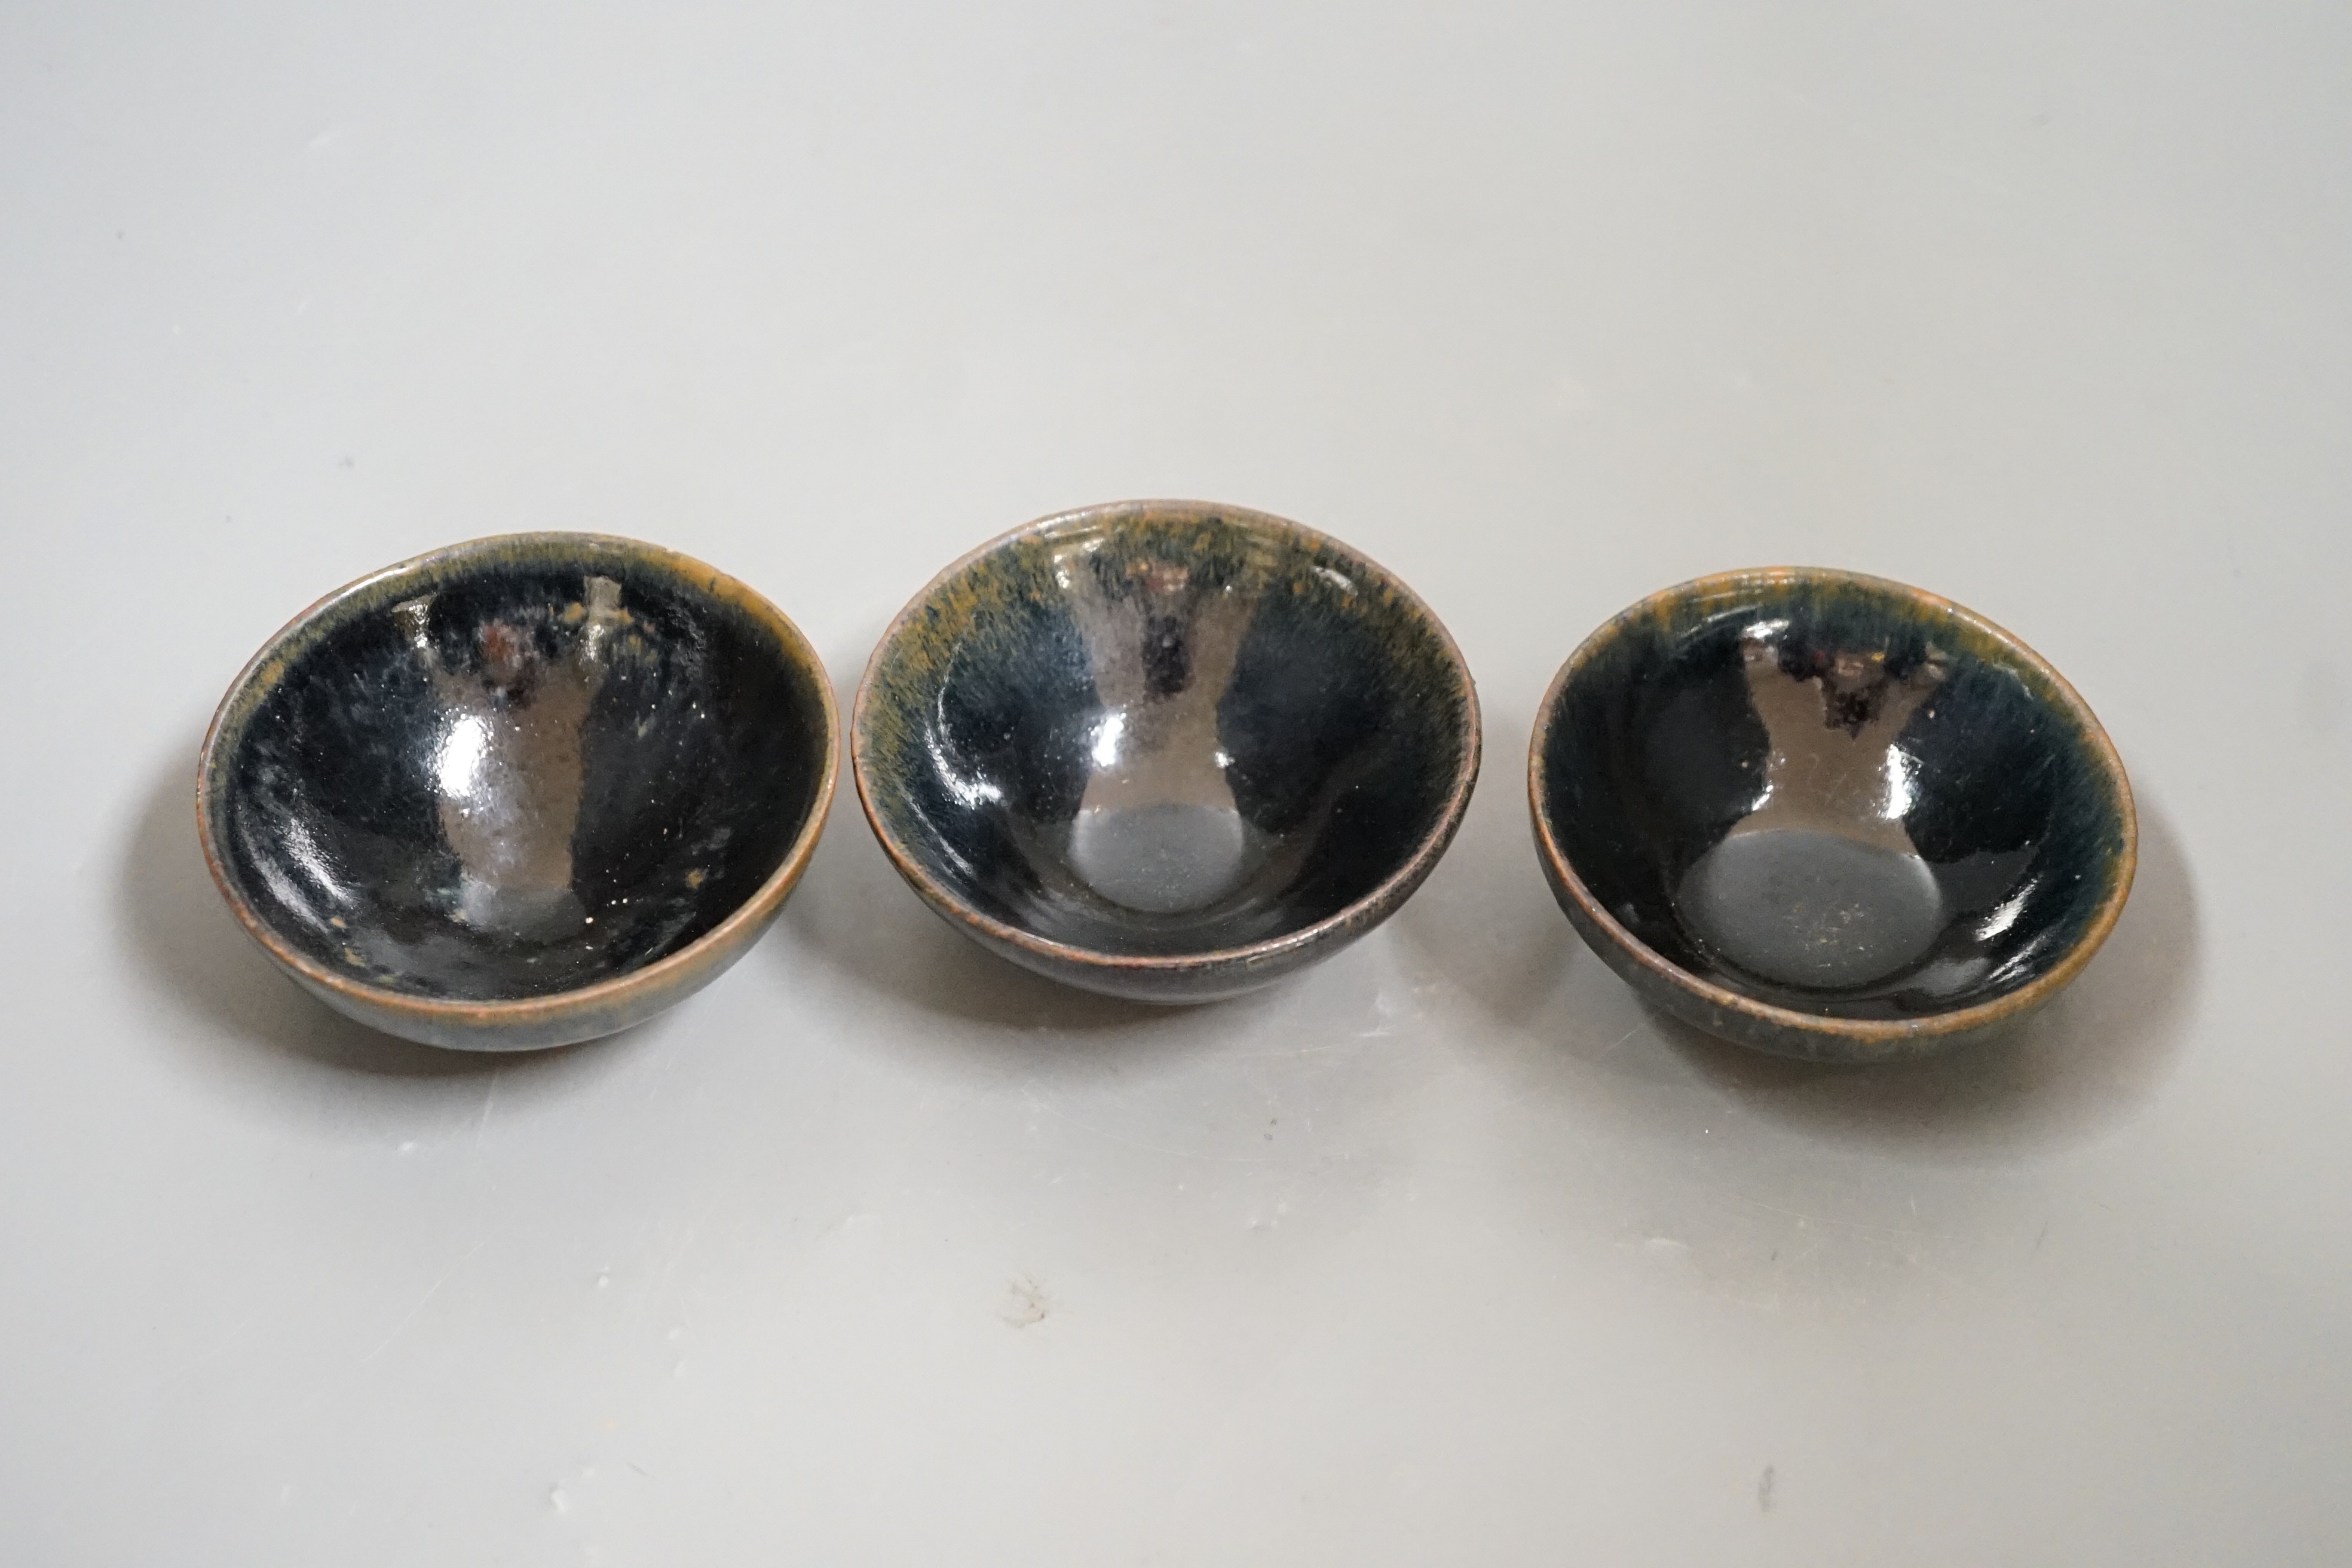 Three Chinese Jian type hare's fur bowls, 9cms diameter